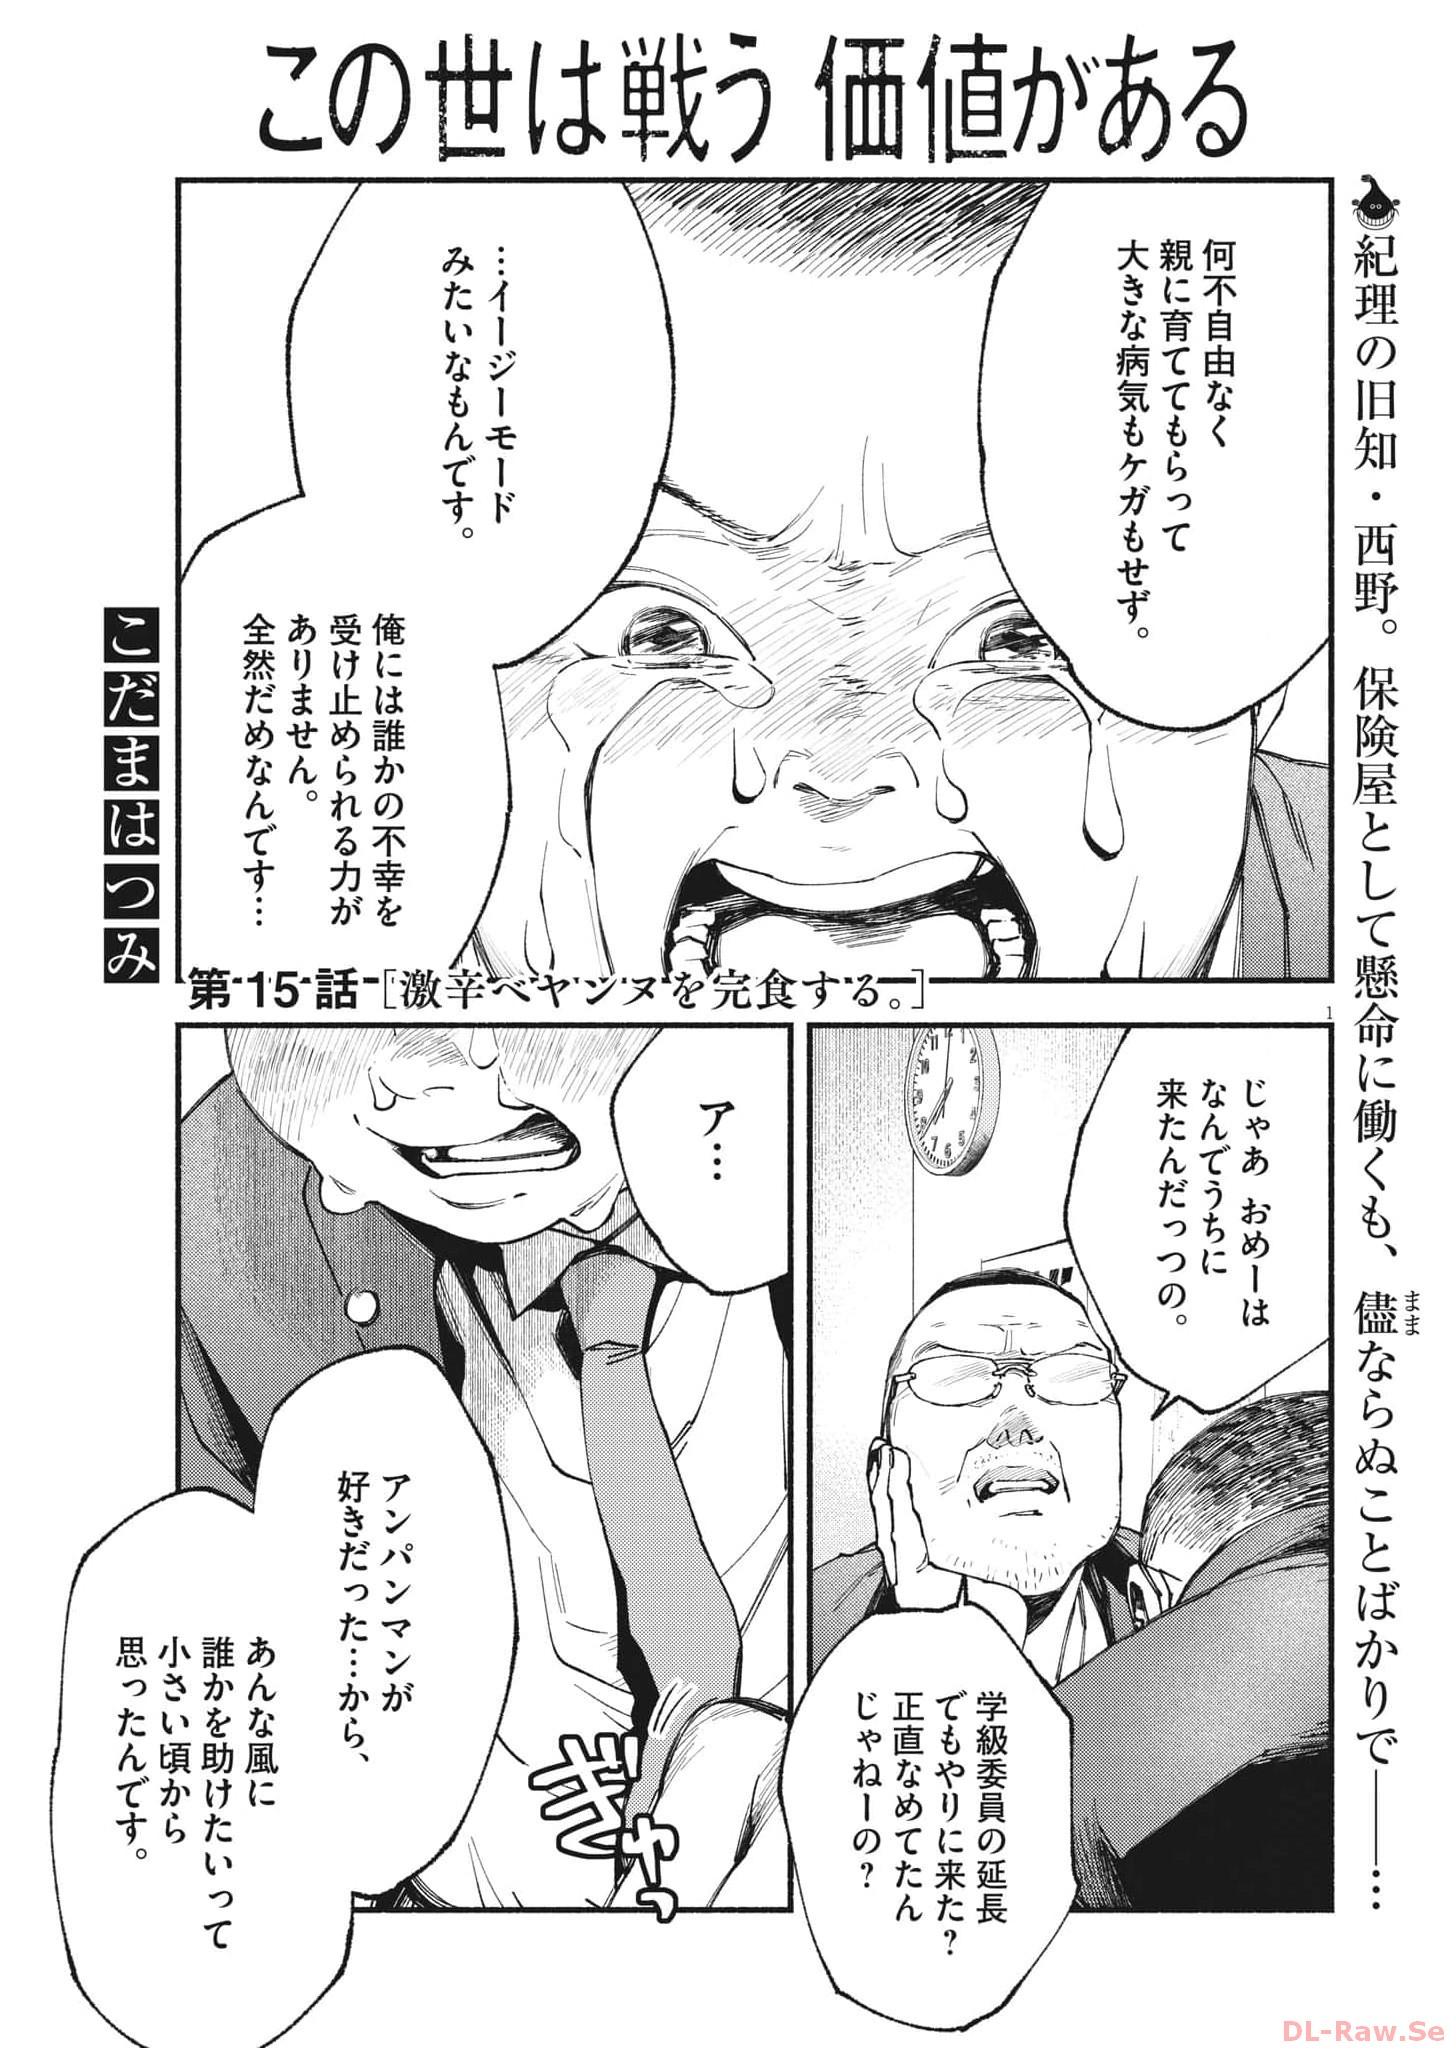 Konoyo wa Tatakau Kachi ga Aru  - Chapter 15 - Page 1